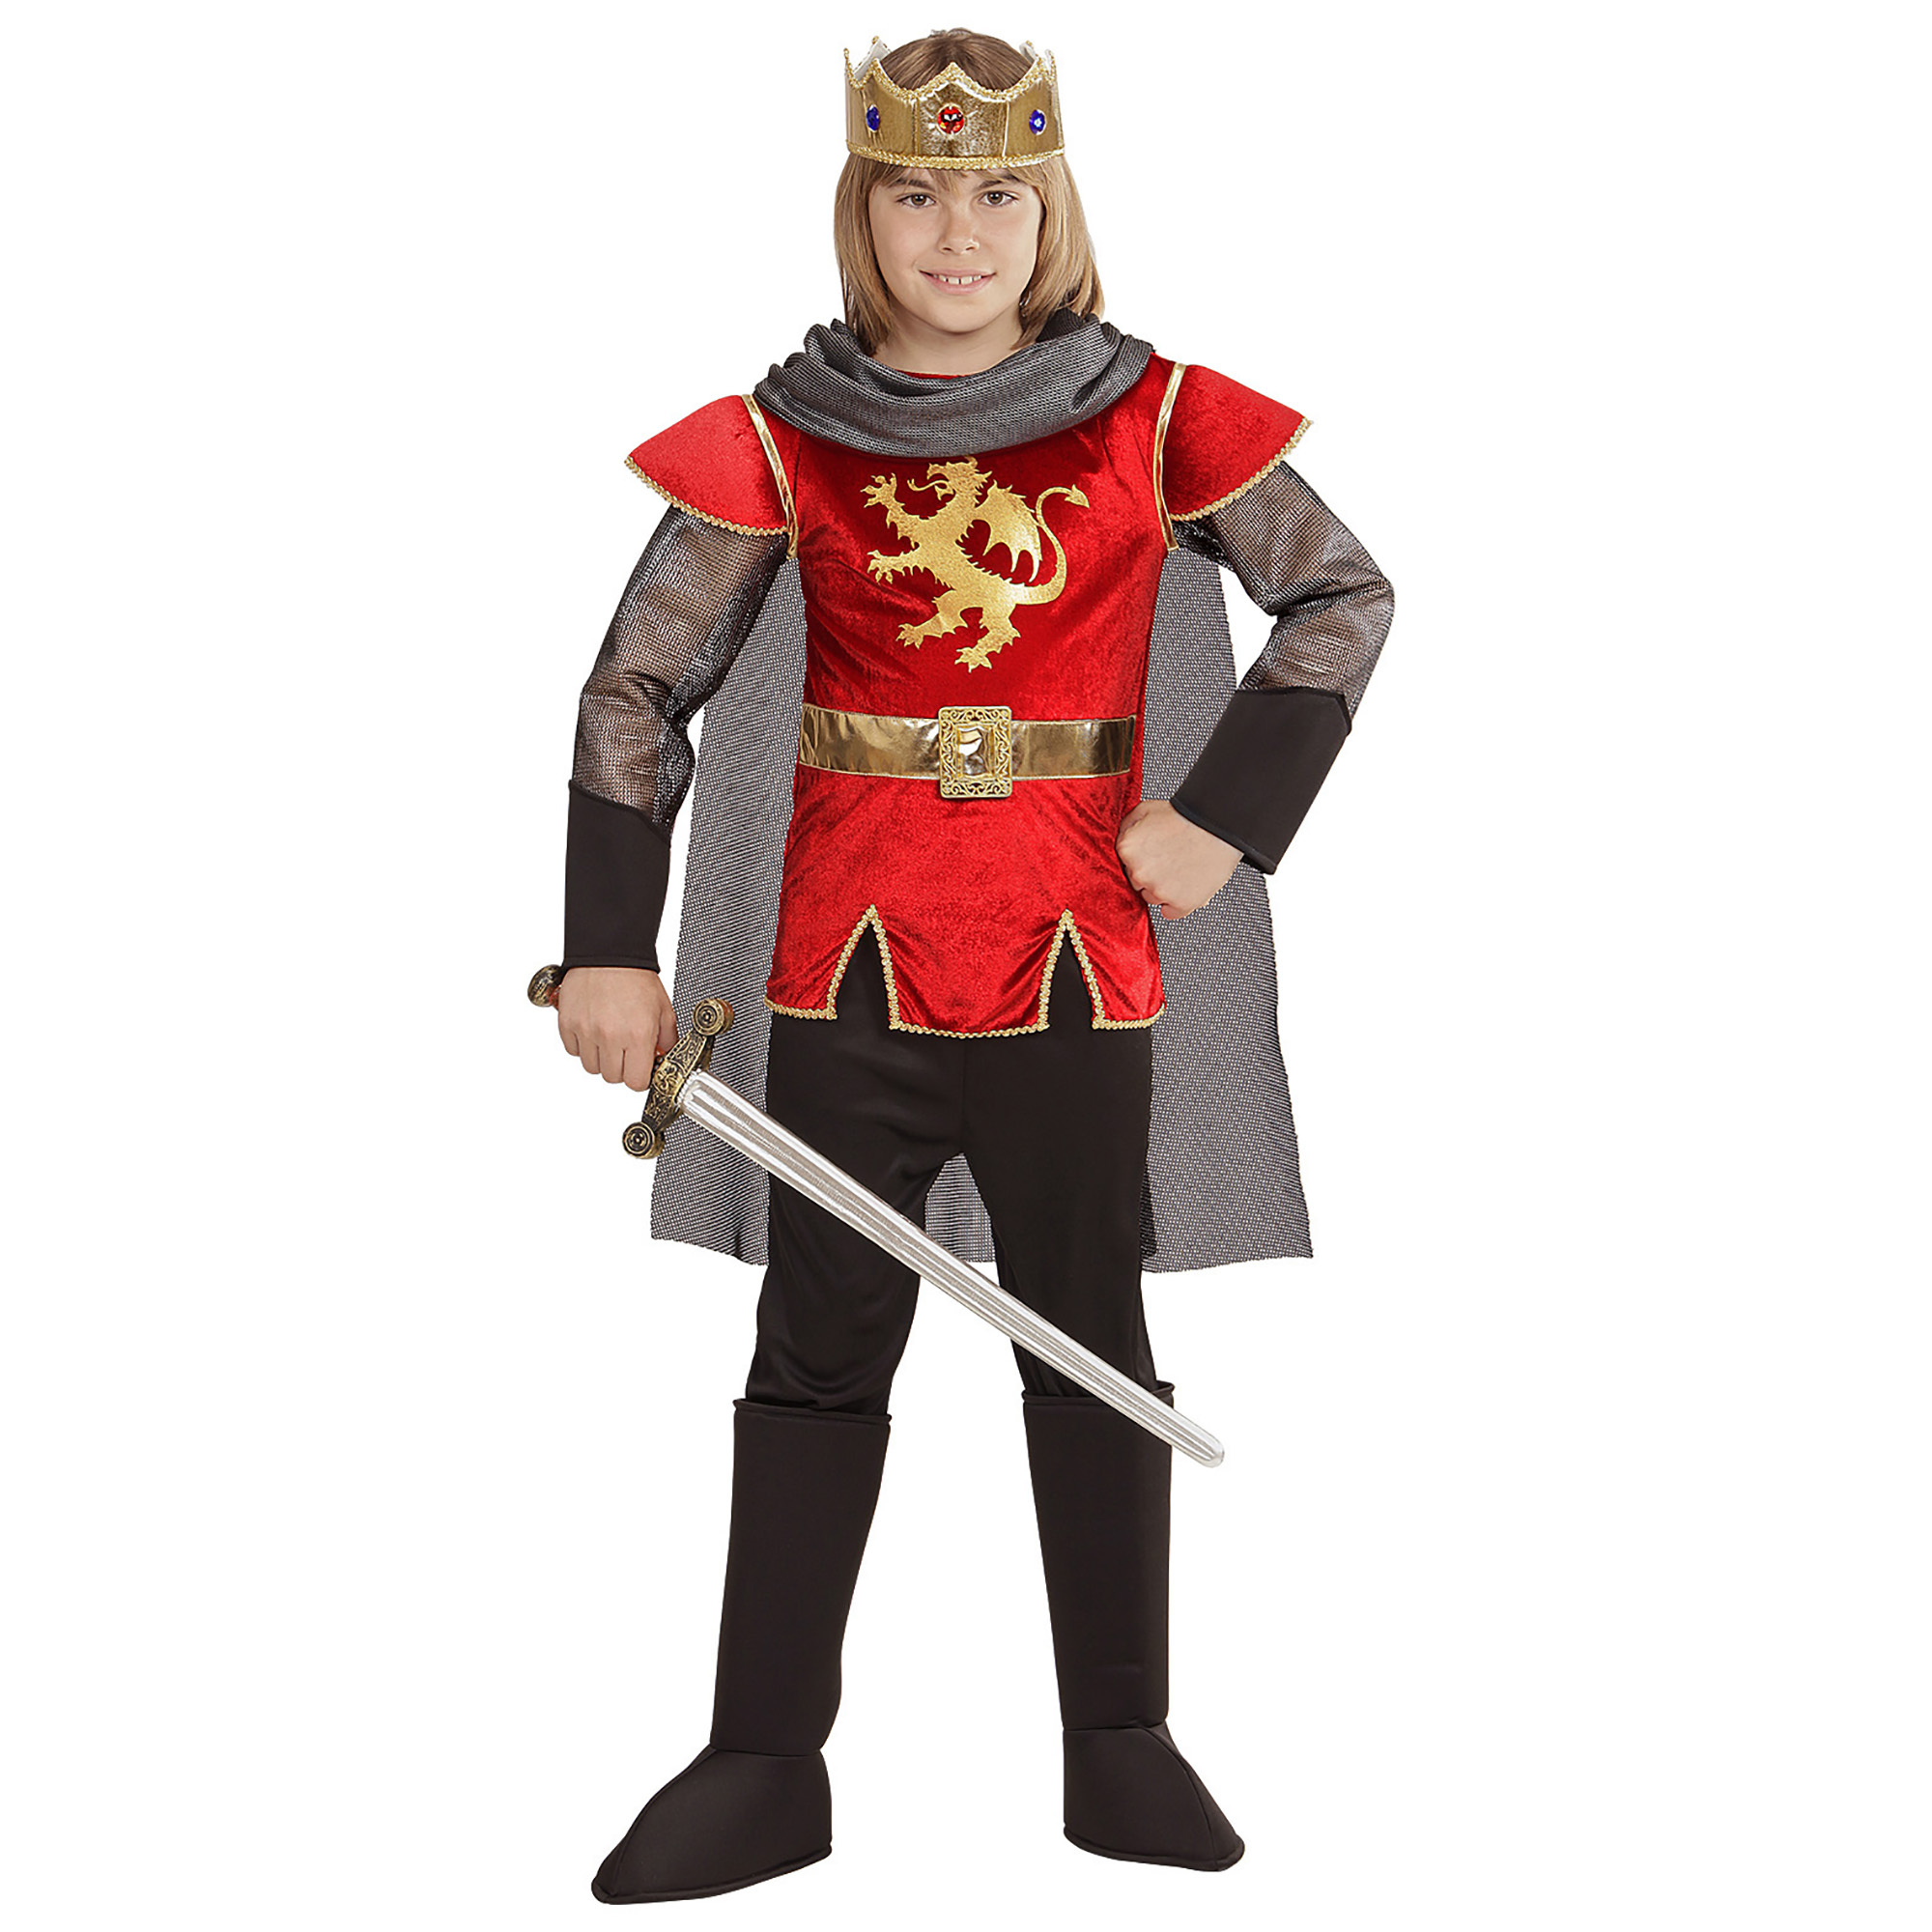 King Arthur English koning kostuum jongen